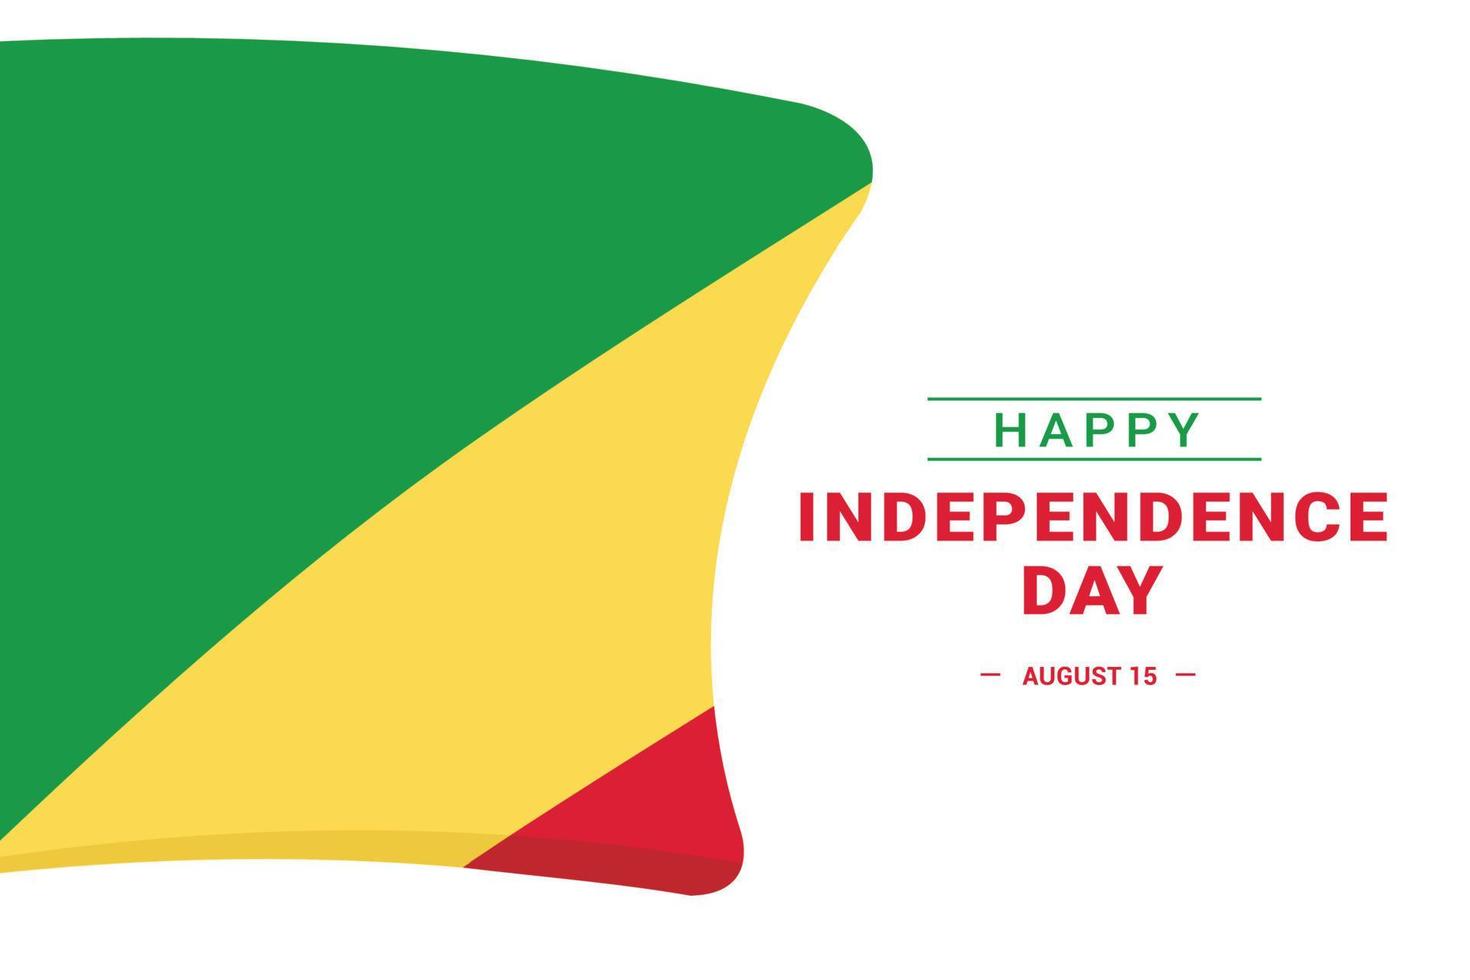 giorno dell'indipendenza della repubblica centrafricana vettore